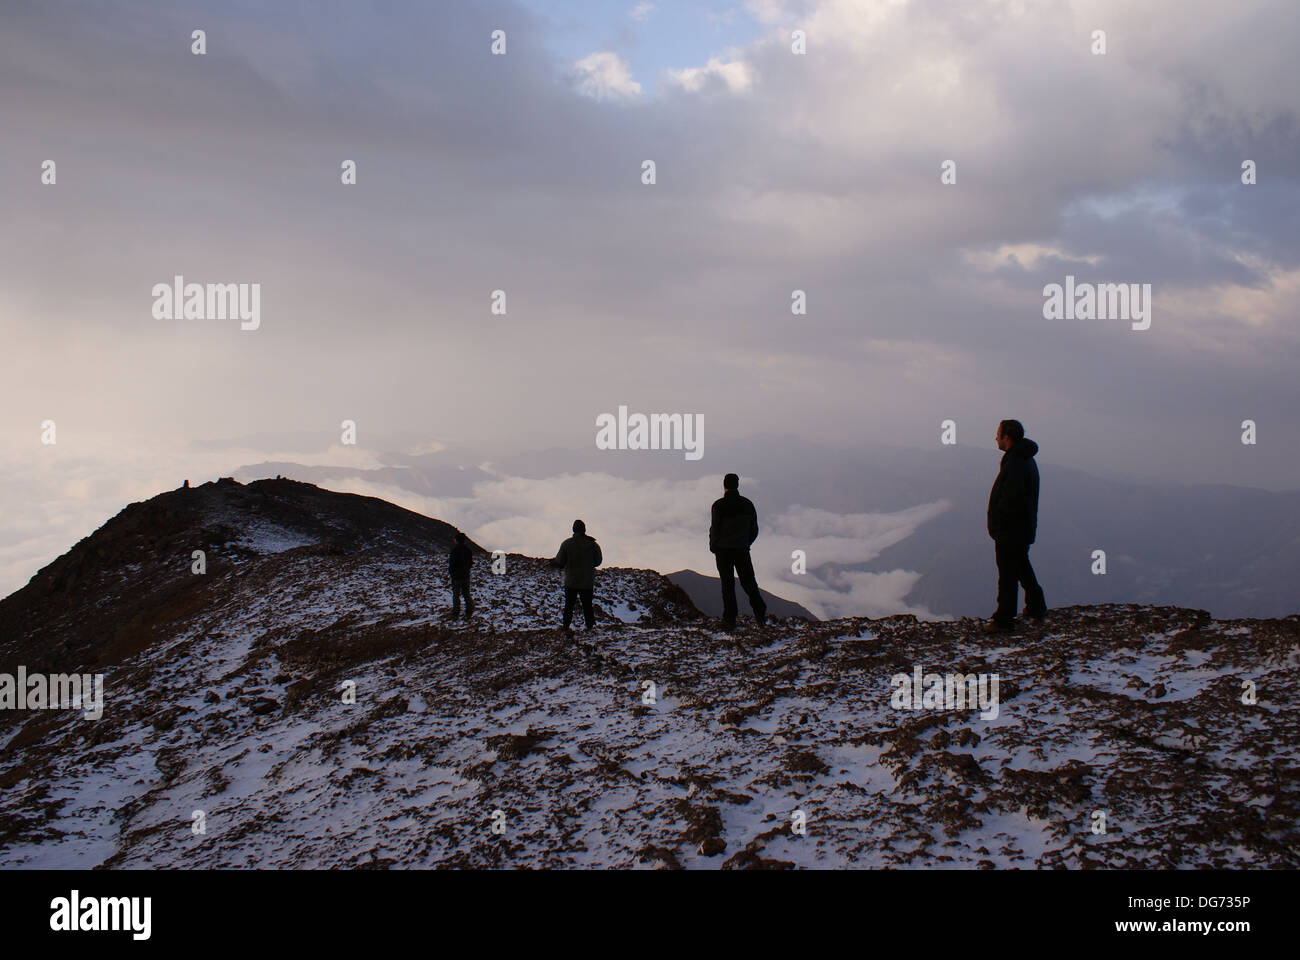 on Mount Damavand, Iran Stock Photo